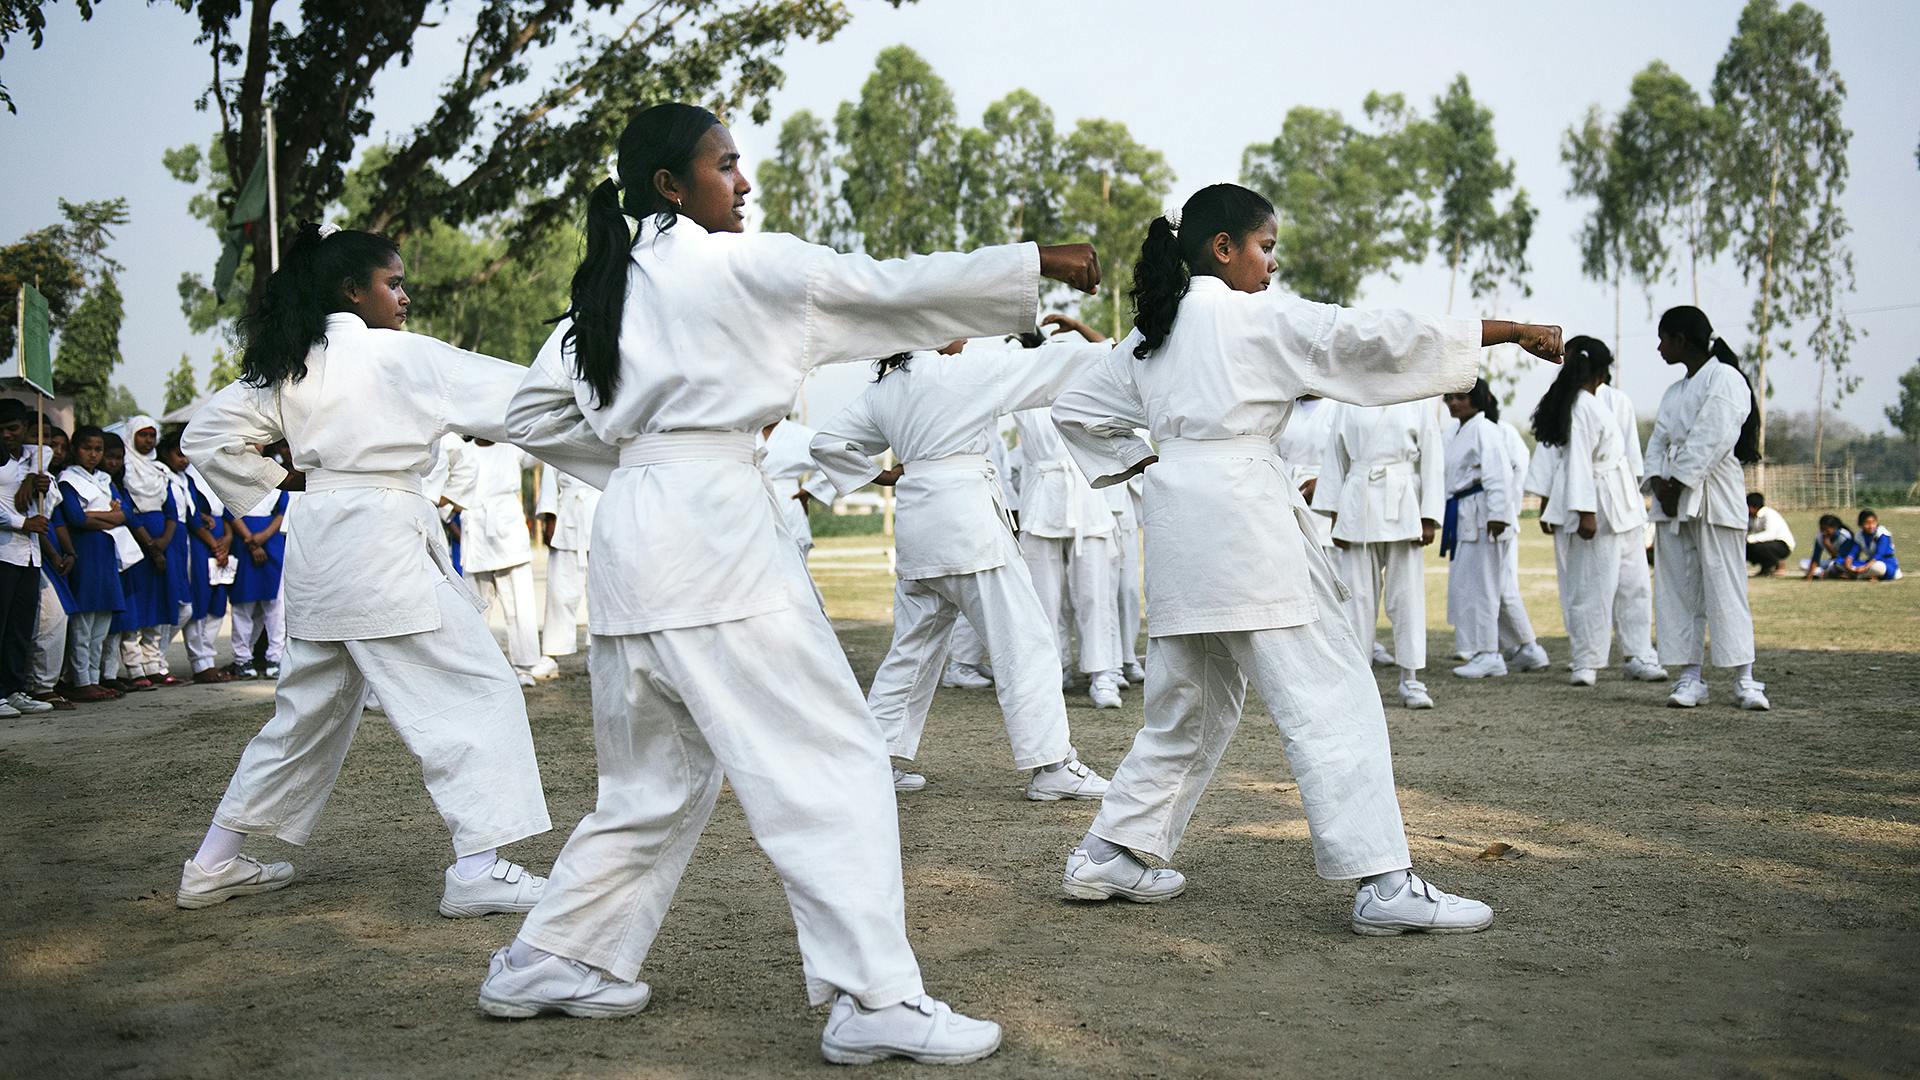 En grupp med unga tjejer som tränar karate utomhus. De har vita karatedräkter på sig. I bakgrunden syns träd och en annan grupp tjejer som tittar på.